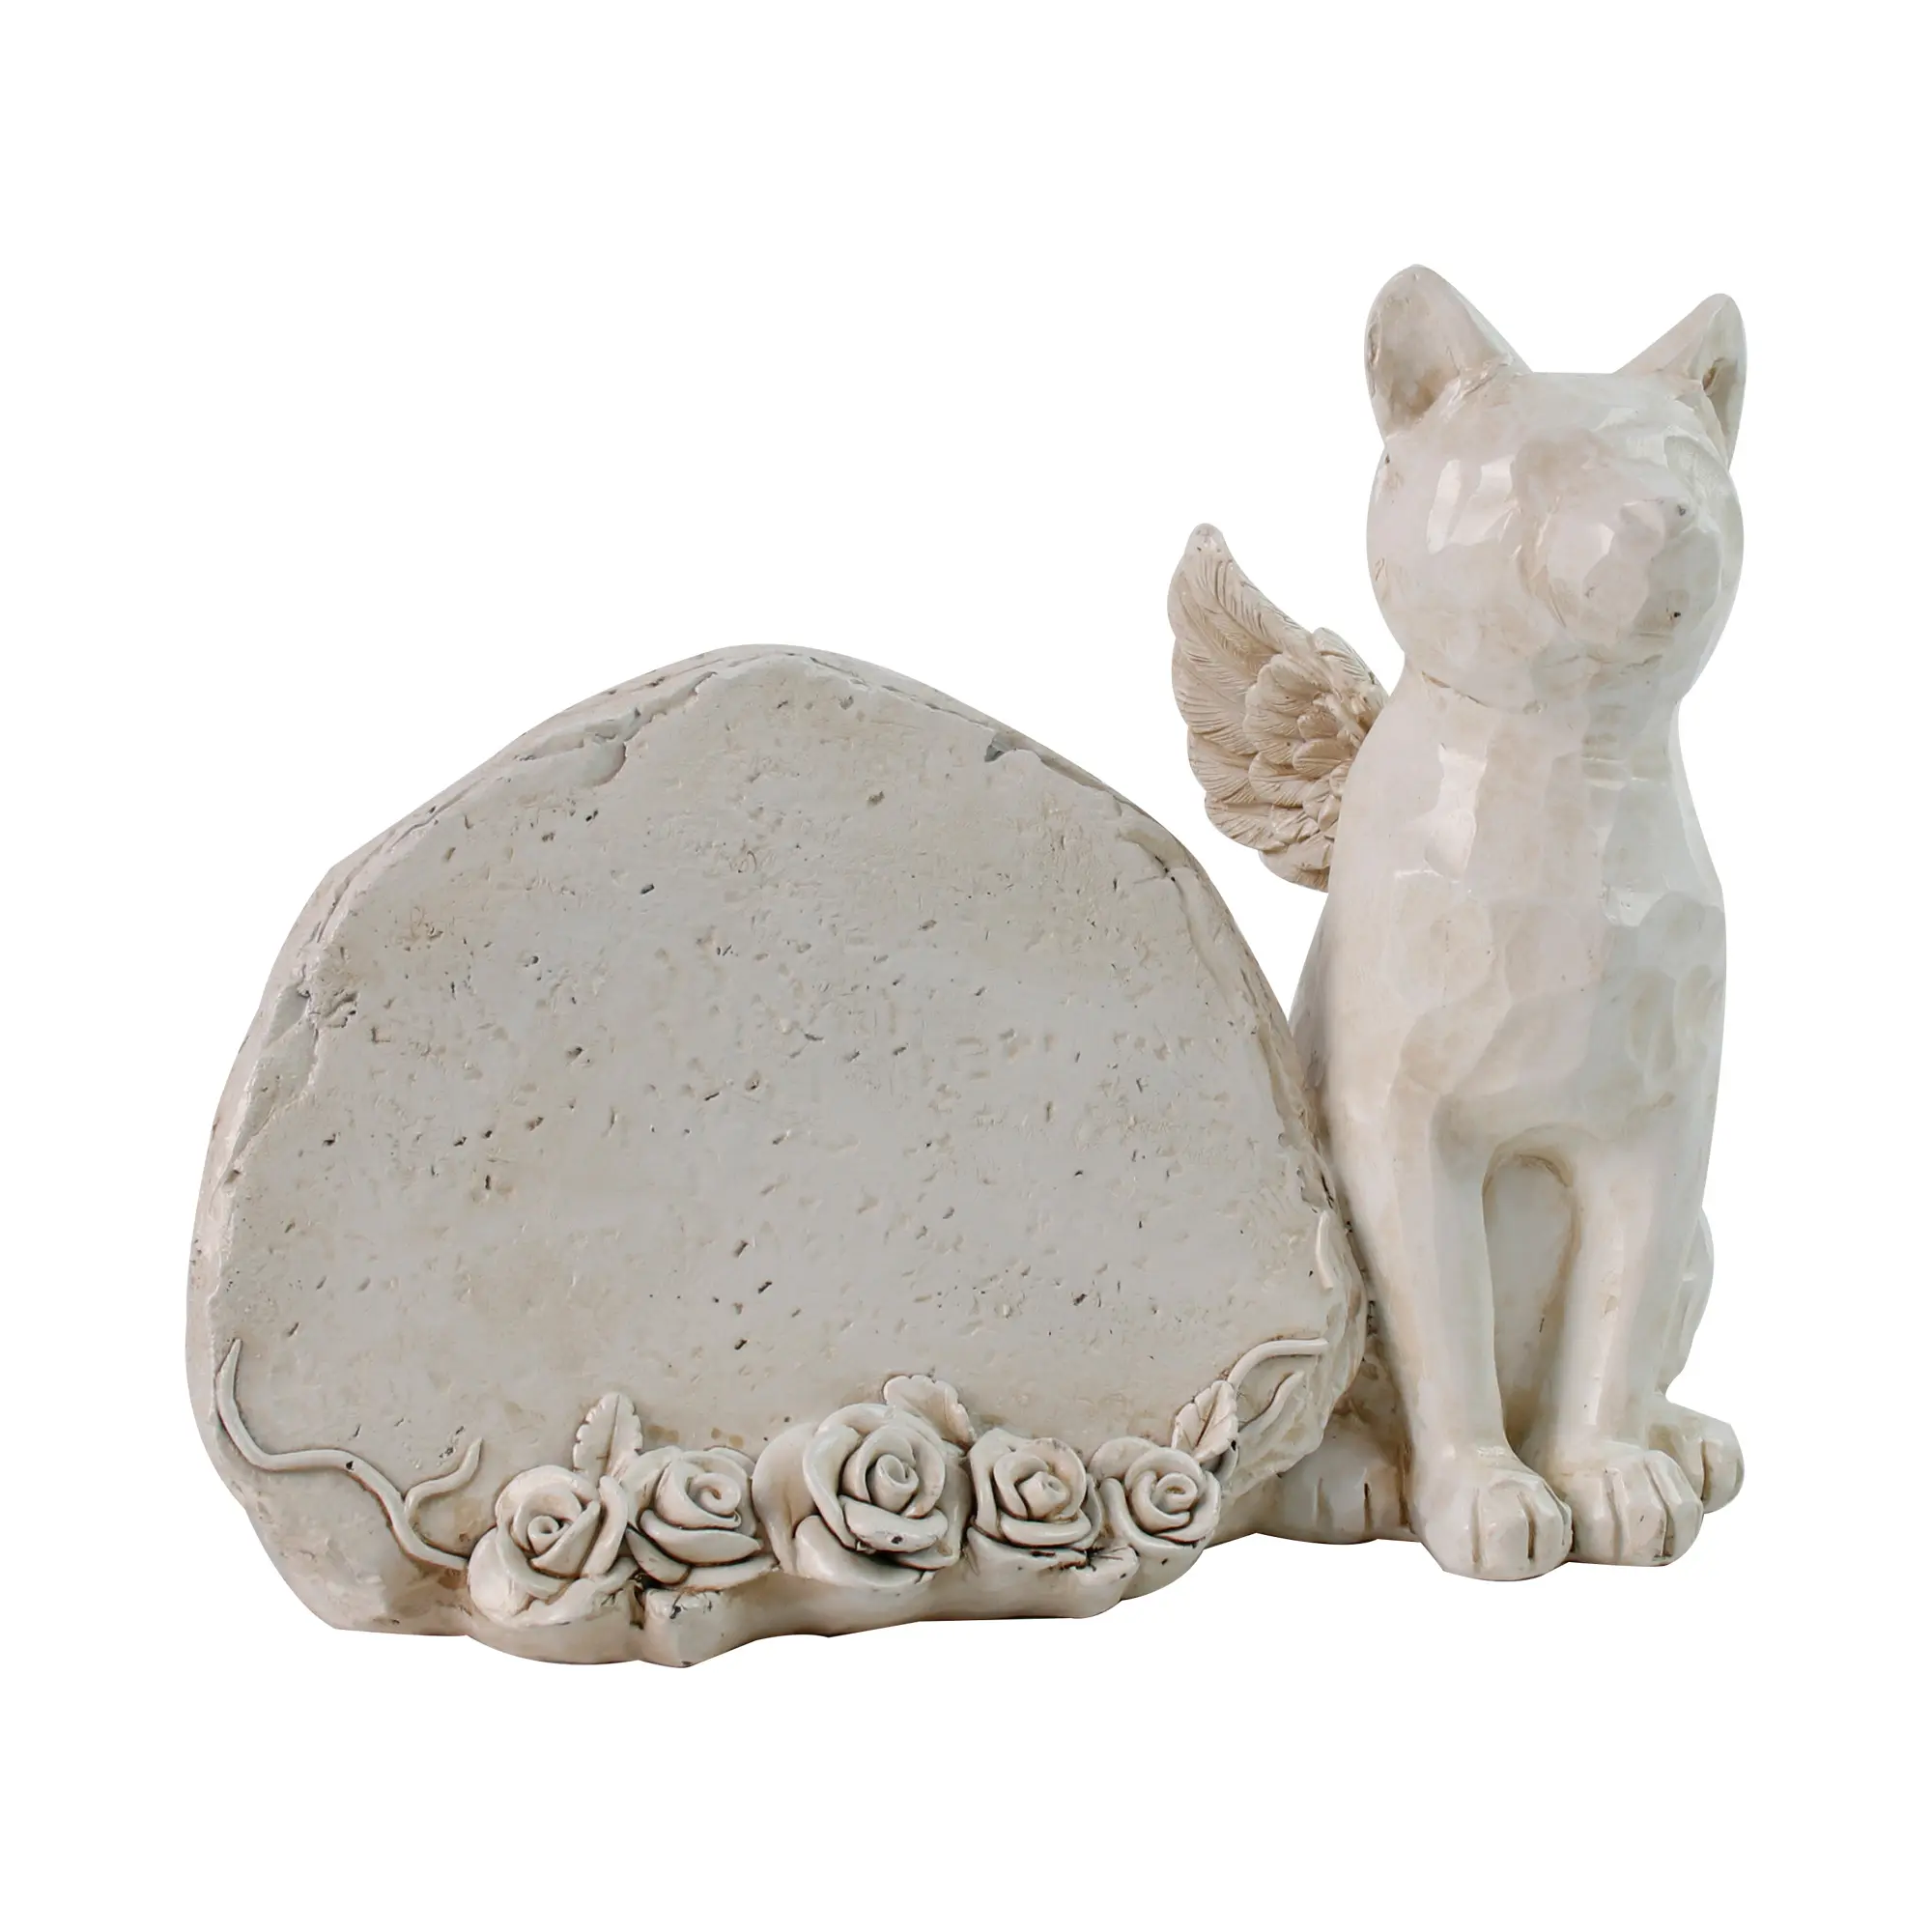 Arte creativa della resina della collina scultura astratta del gatto della memoria dell'animale domestico lettering statua decorazione esterna